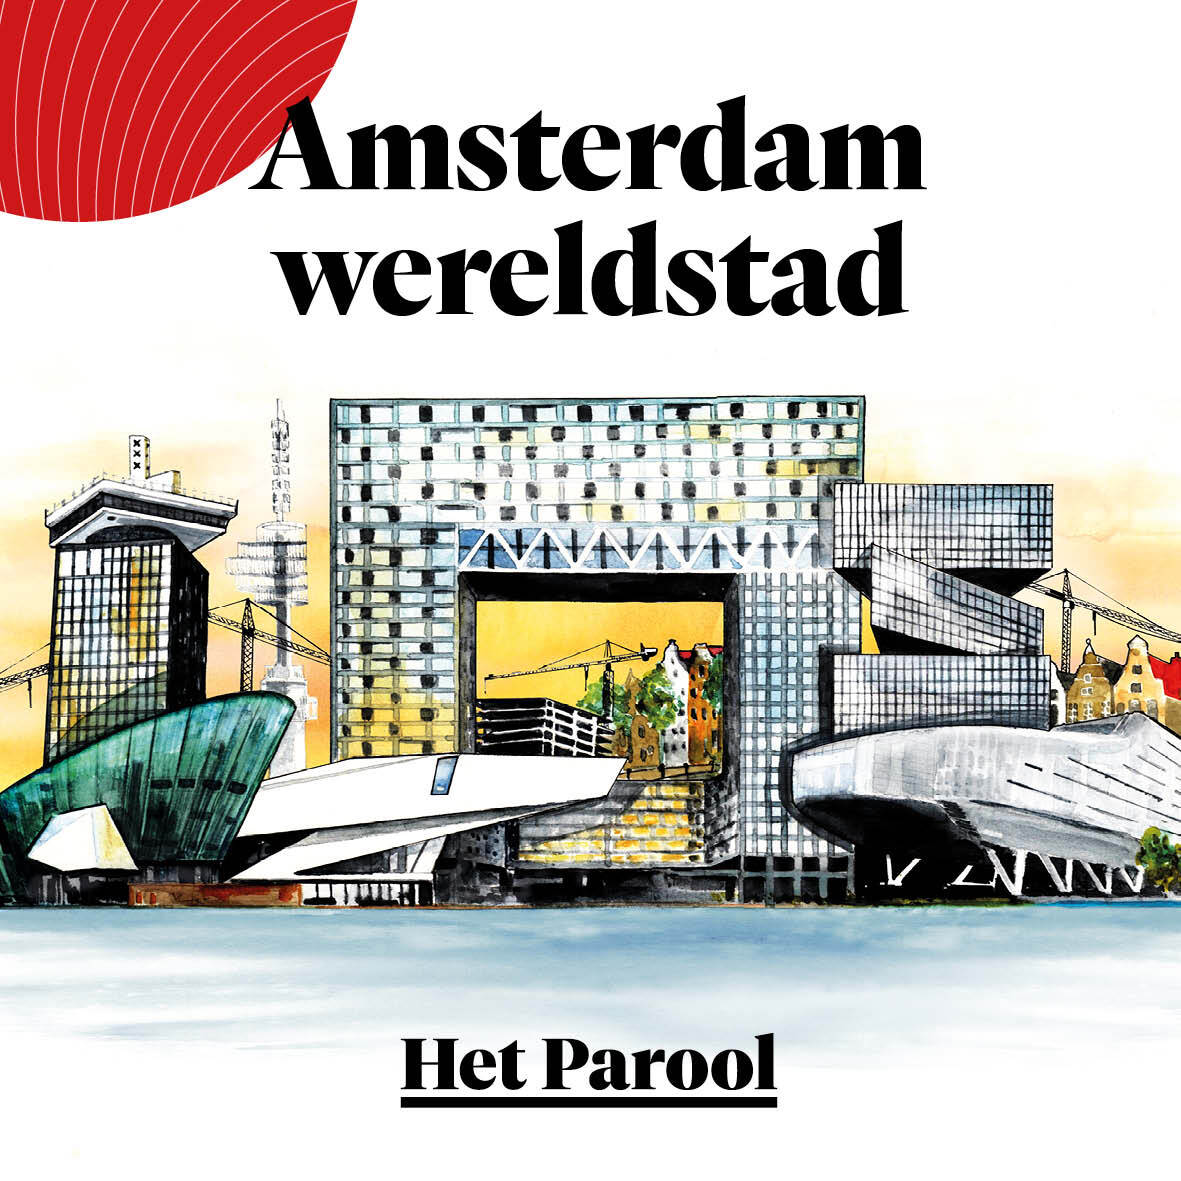 Waarom het bejubelde samenwonen van Amsterdamse statushouders en jongeren zo veel problemen oplevert